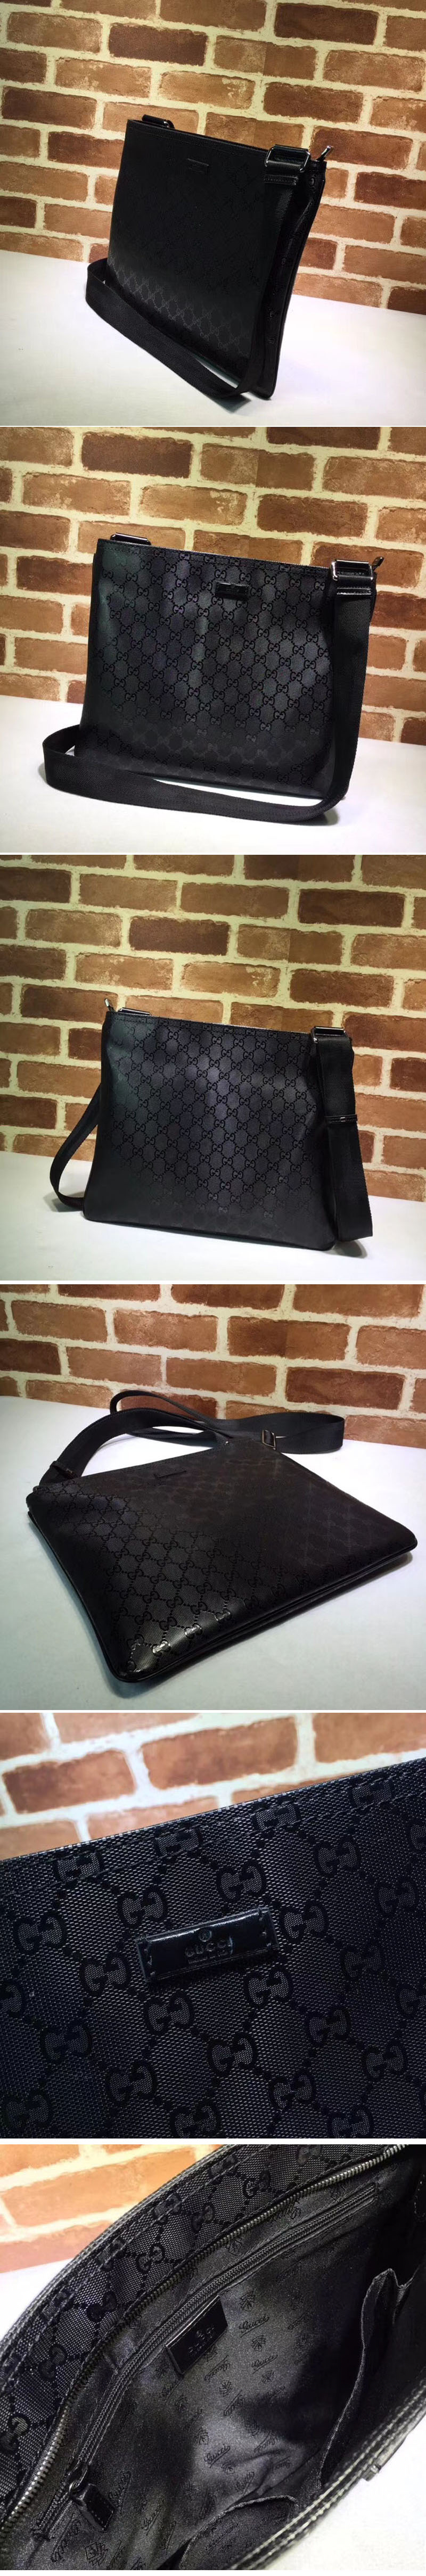 Replica Gucci 201446 GG Supreme Canvas messenger Bags Black